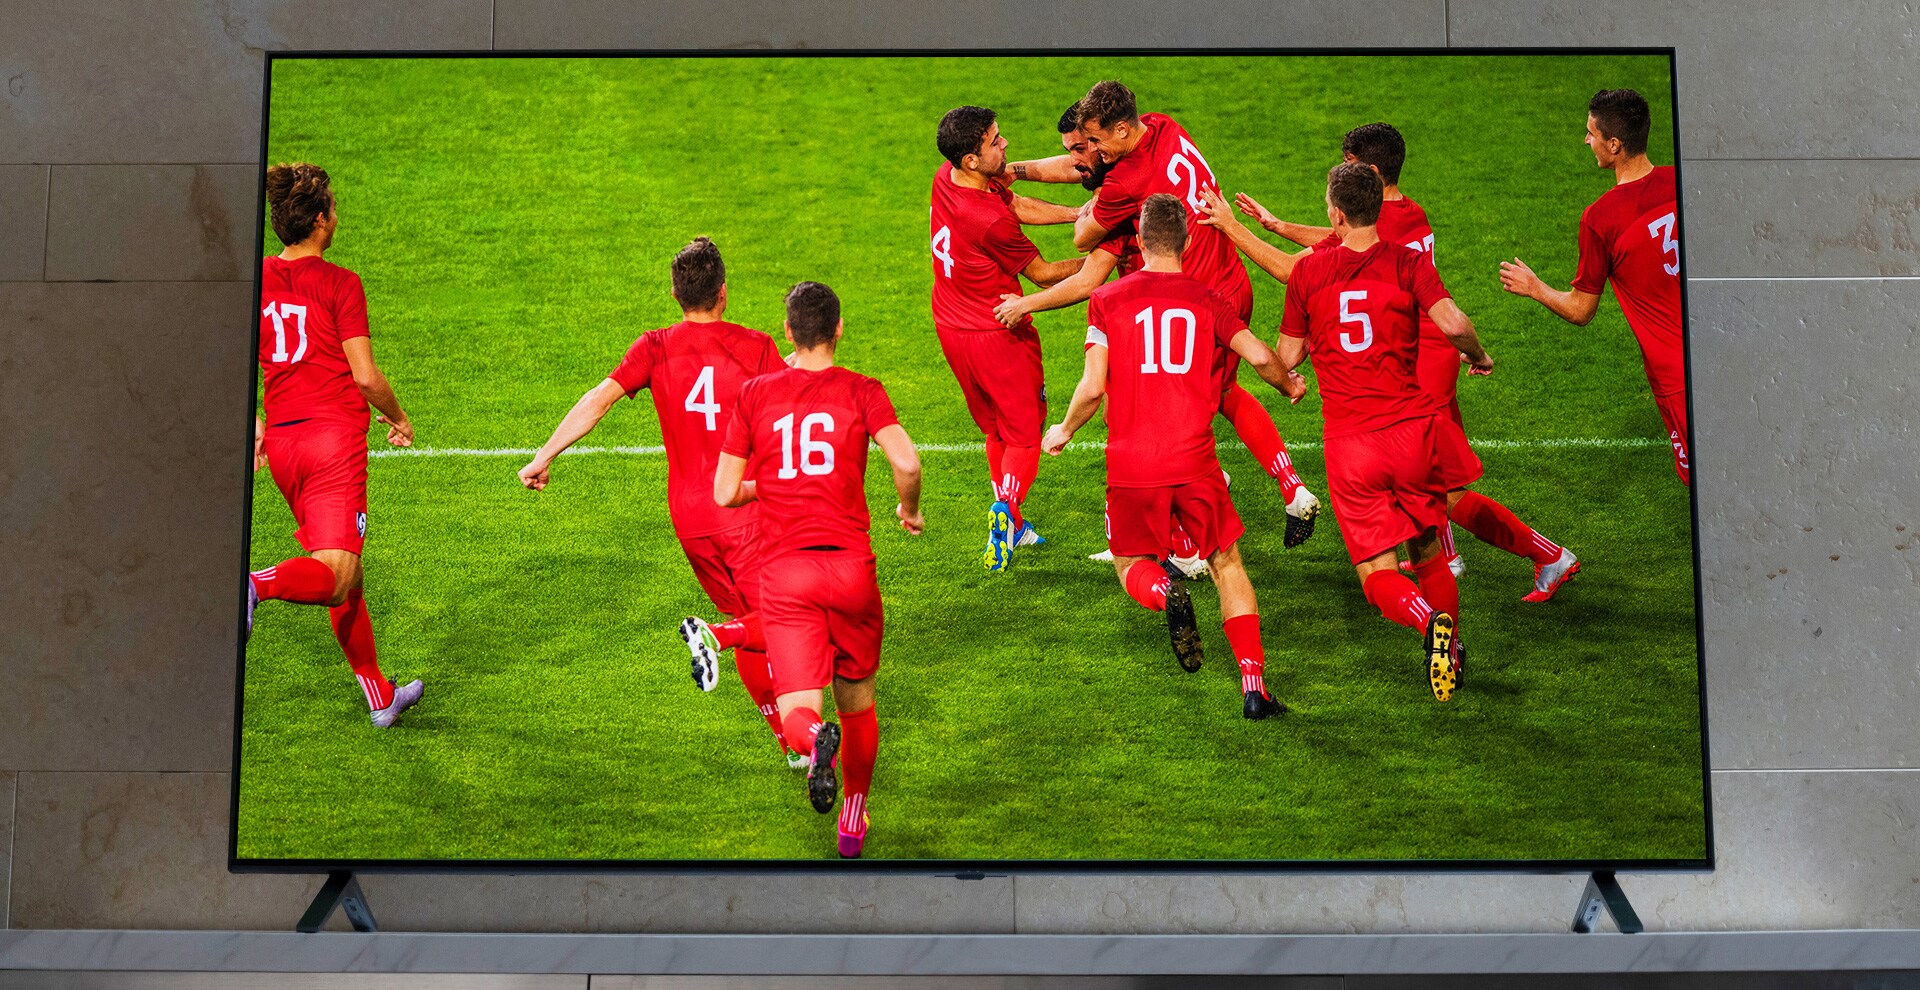 Ein NanoCell TV steht auf einem Standfuss. Auf dem Bildschirm sehen wir ihren Sieg feiernde Fussballspieler.